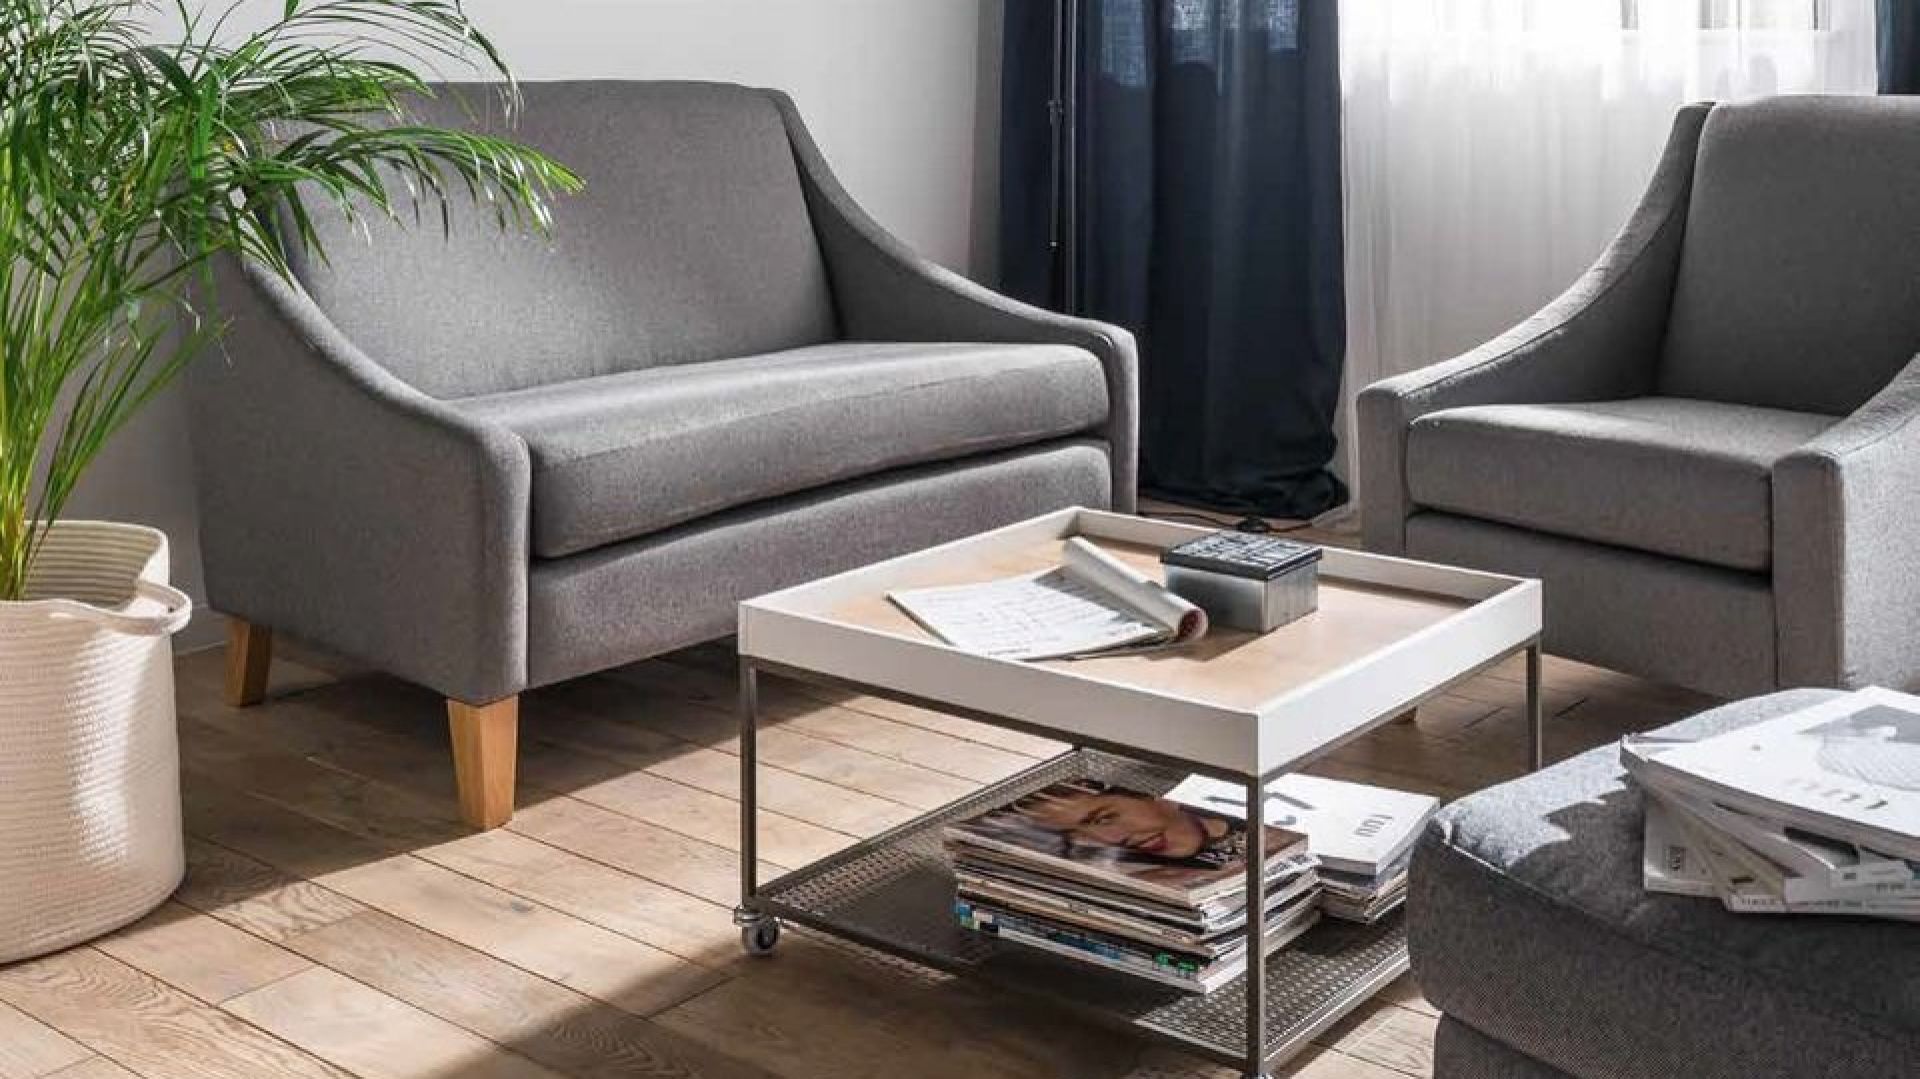 Sofa do małego wnętrza - zobacz modele w cenie do 3 tys. zł